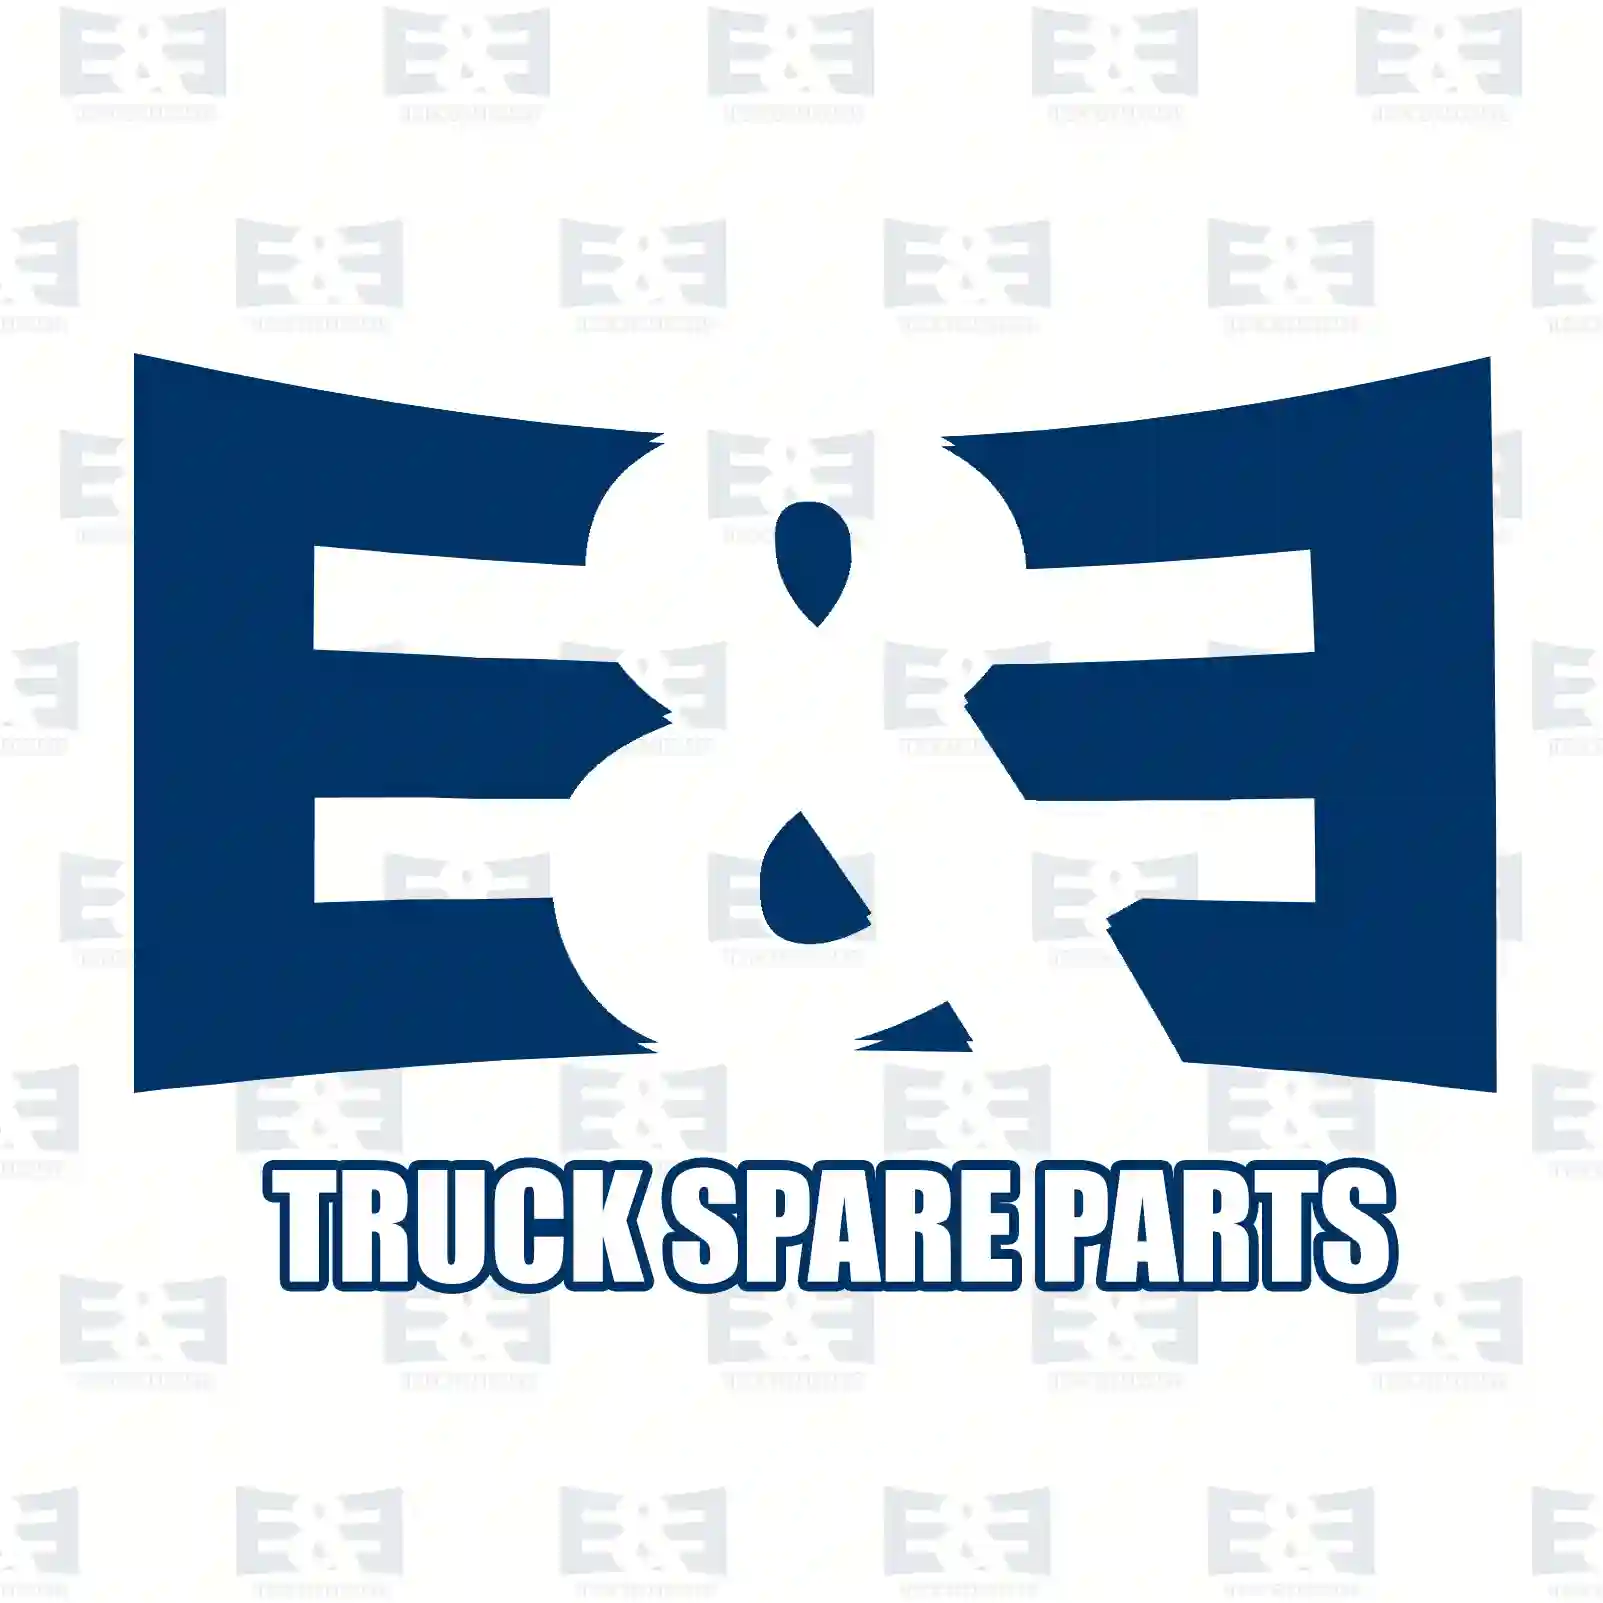 Clutch kit, 2E2288986, 81300006532, 813 ||  2E2288986 E&E Truck Spare Parts | Truck Spare Parts, Auotomotive Spare Parts Clutch kit, 2E2288986, 81300006532, 813 ||  2E2288986 E&E Truck Spare Parts | Truck Spare Parts, Auotomotive Spare Parts